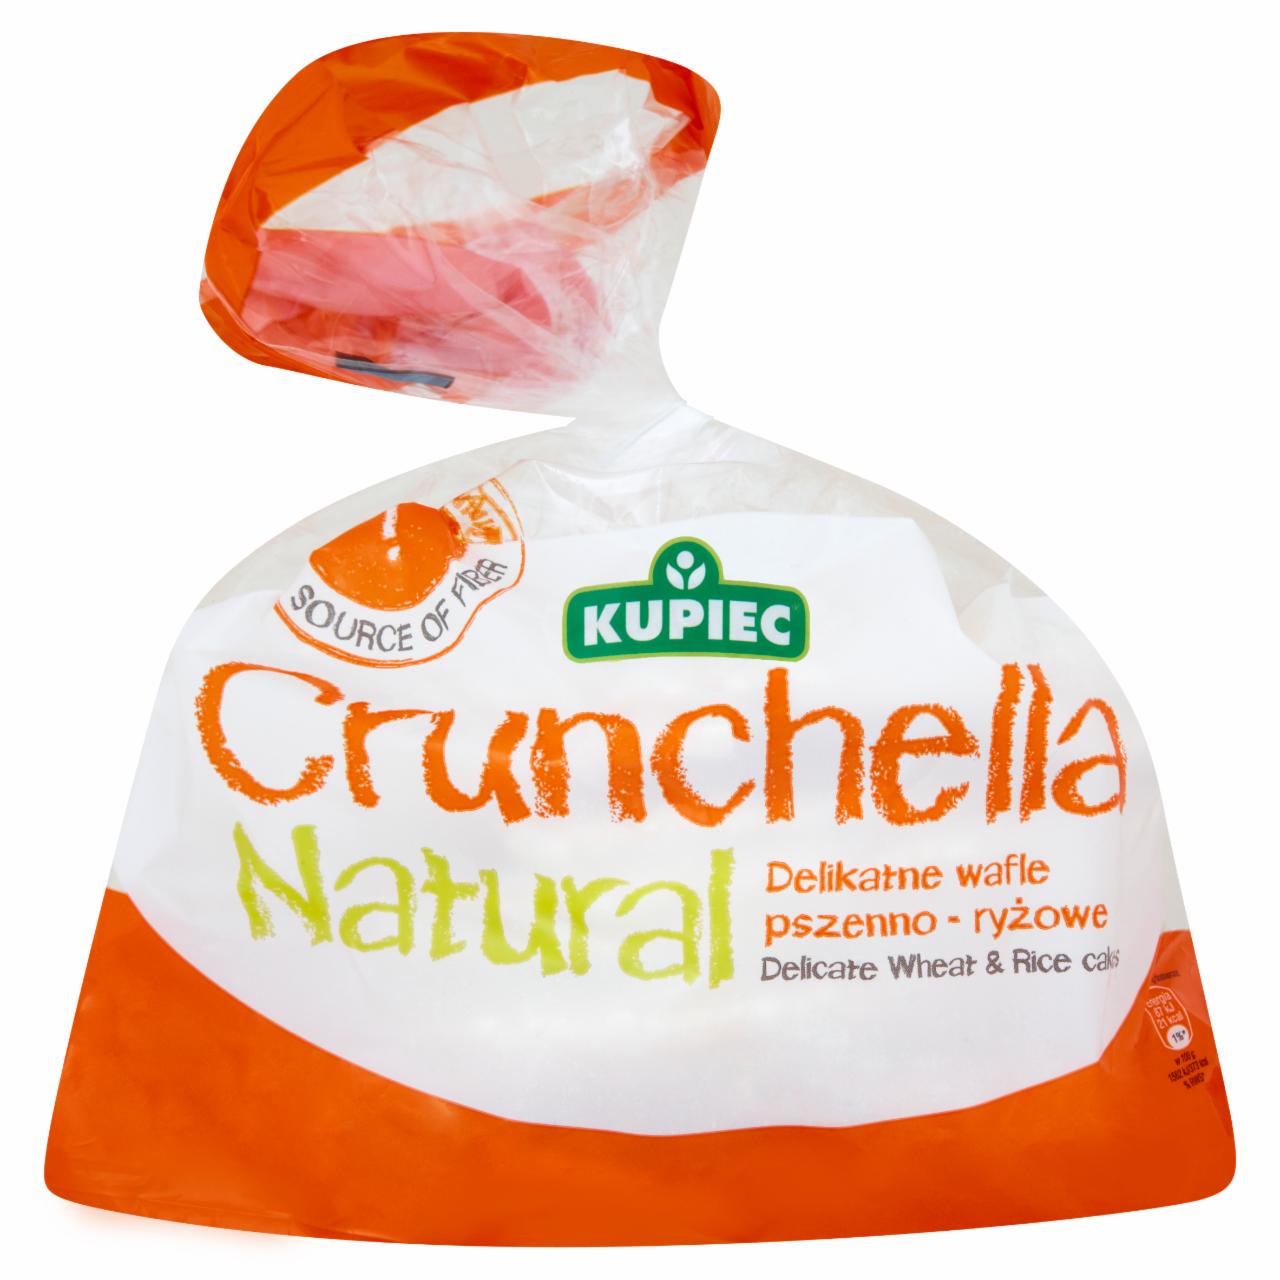 Zdjęcia - Kupiec Crunchella Natural Delikatne wafle pszenno-ryżowe 56 g